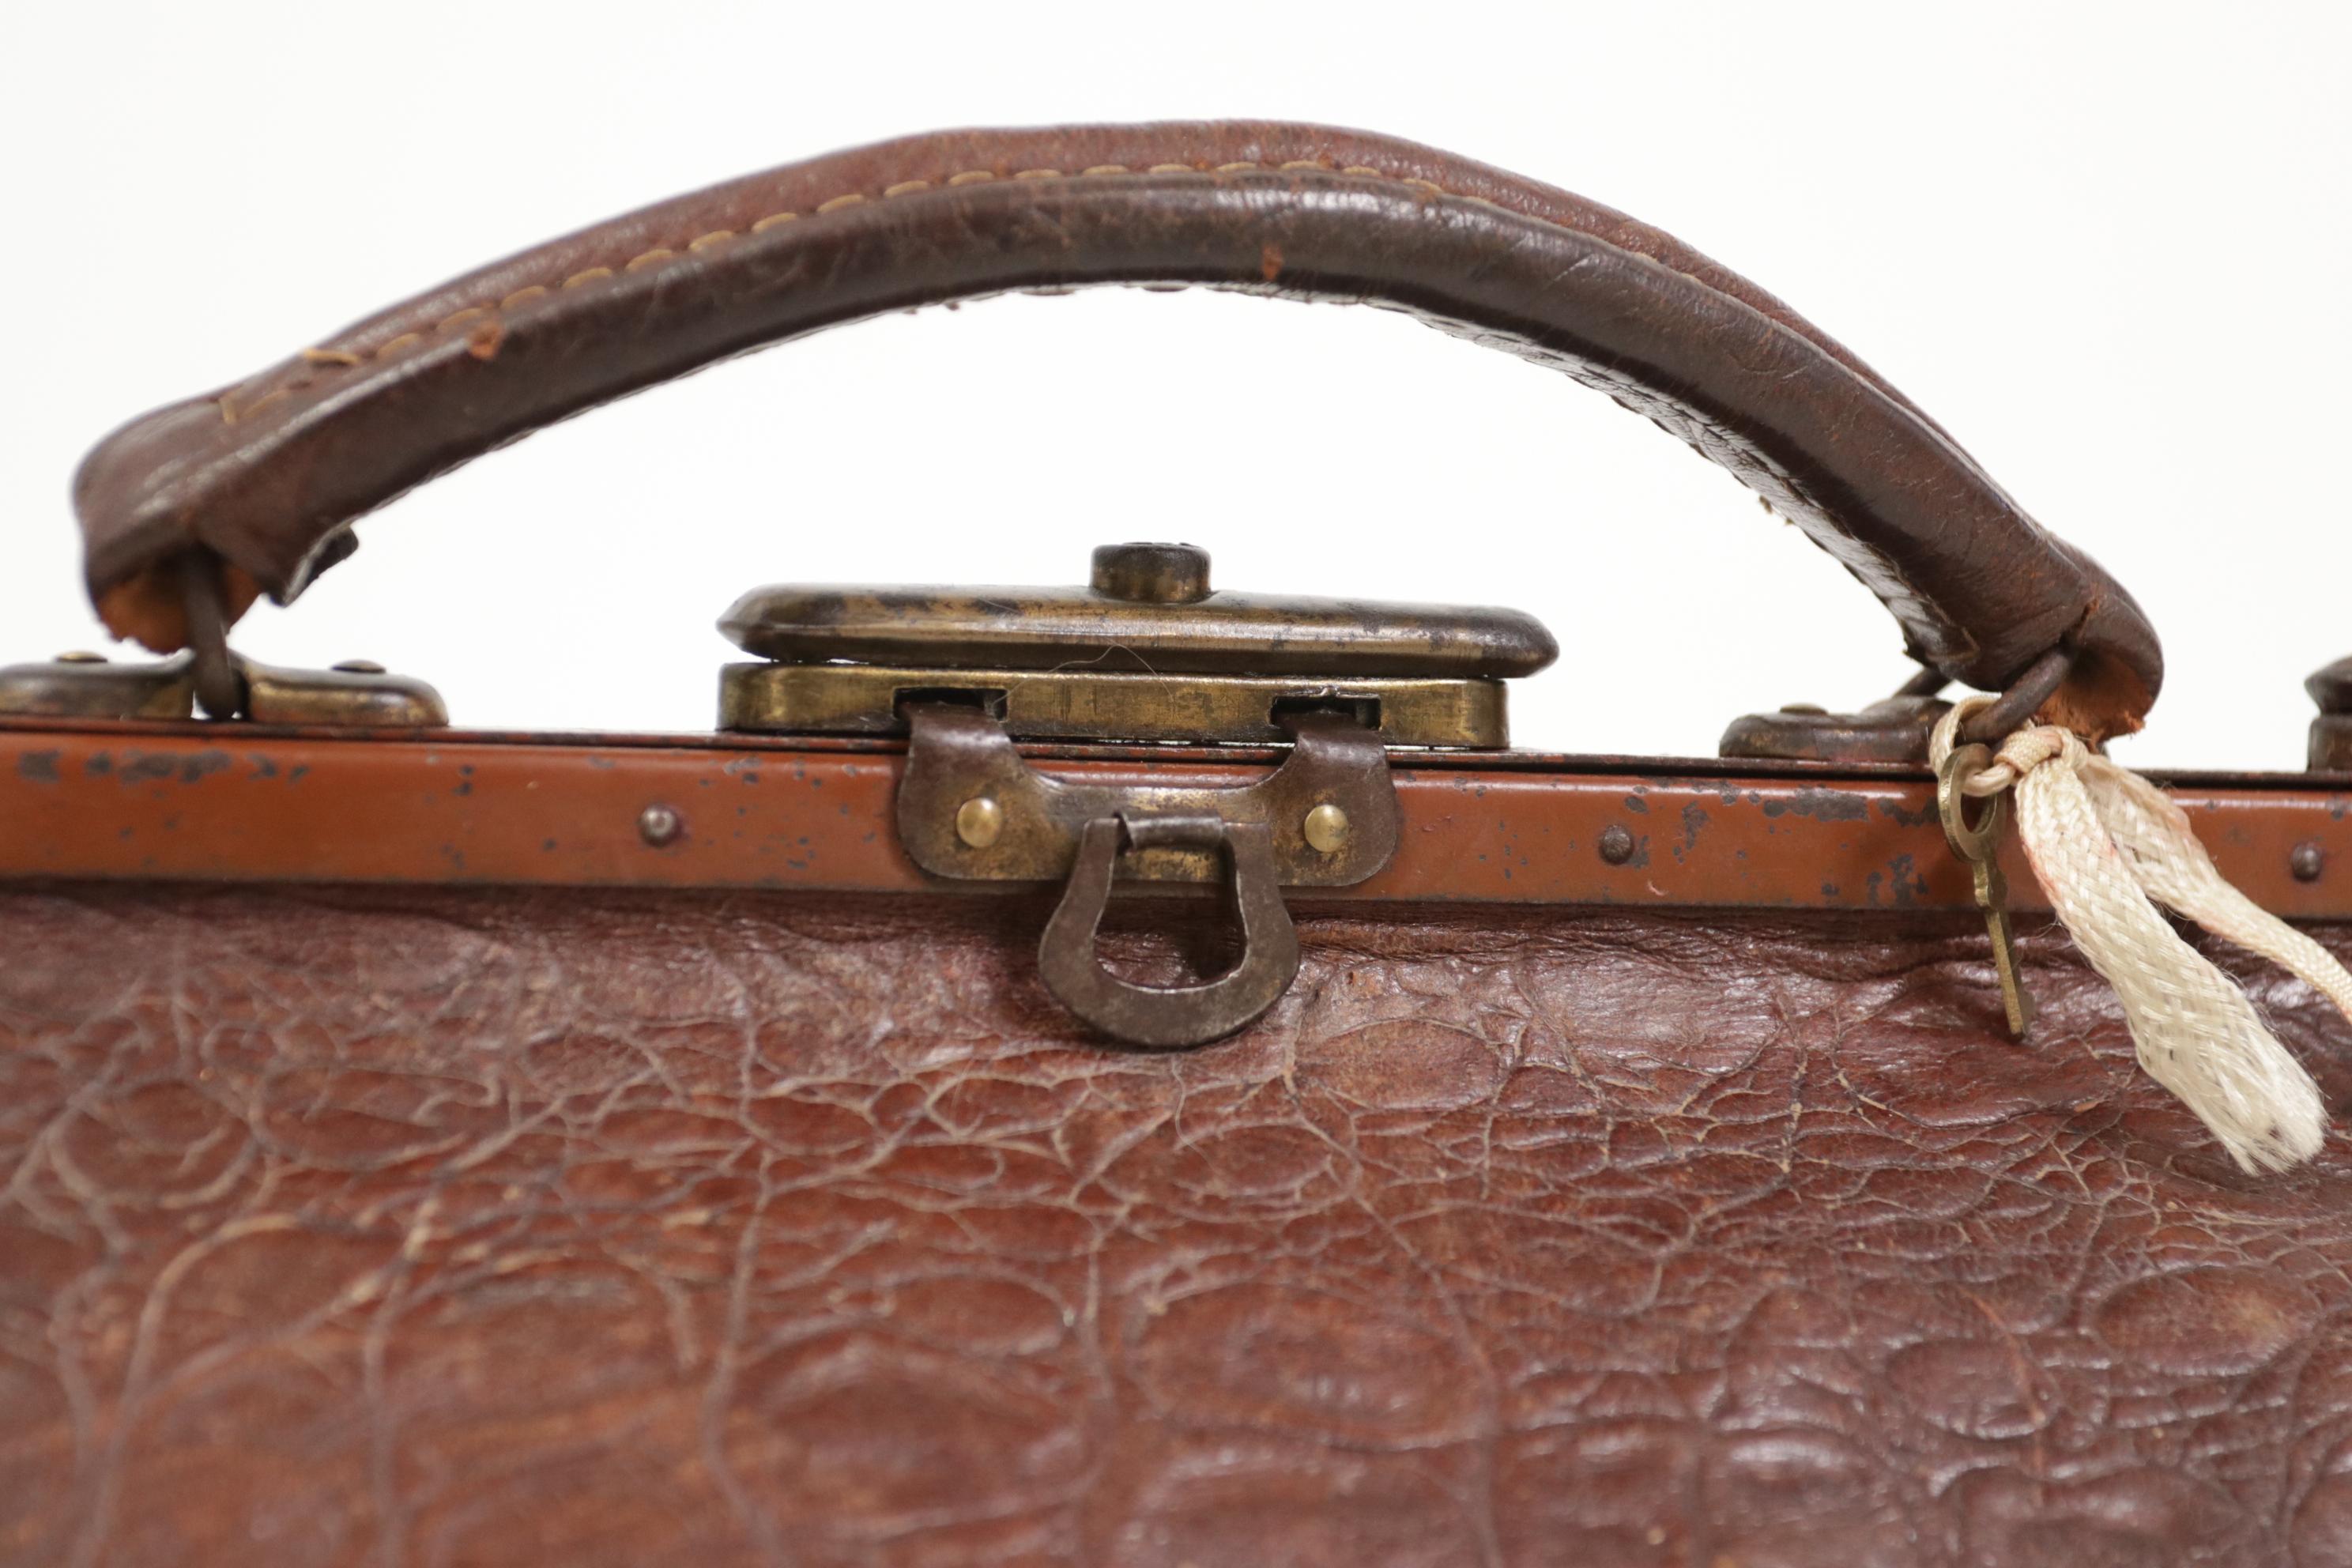 A.I.C. C'est une ancienne trousse de médecin en cuir de crocodile gaufré. C.C. 1920
Le sac est dans un bel état antique après ca. 100 ans comme vous pouvez le voir sur les photos.
Il a même sa petite clé, bel objet décoratif mais aussi utilisable